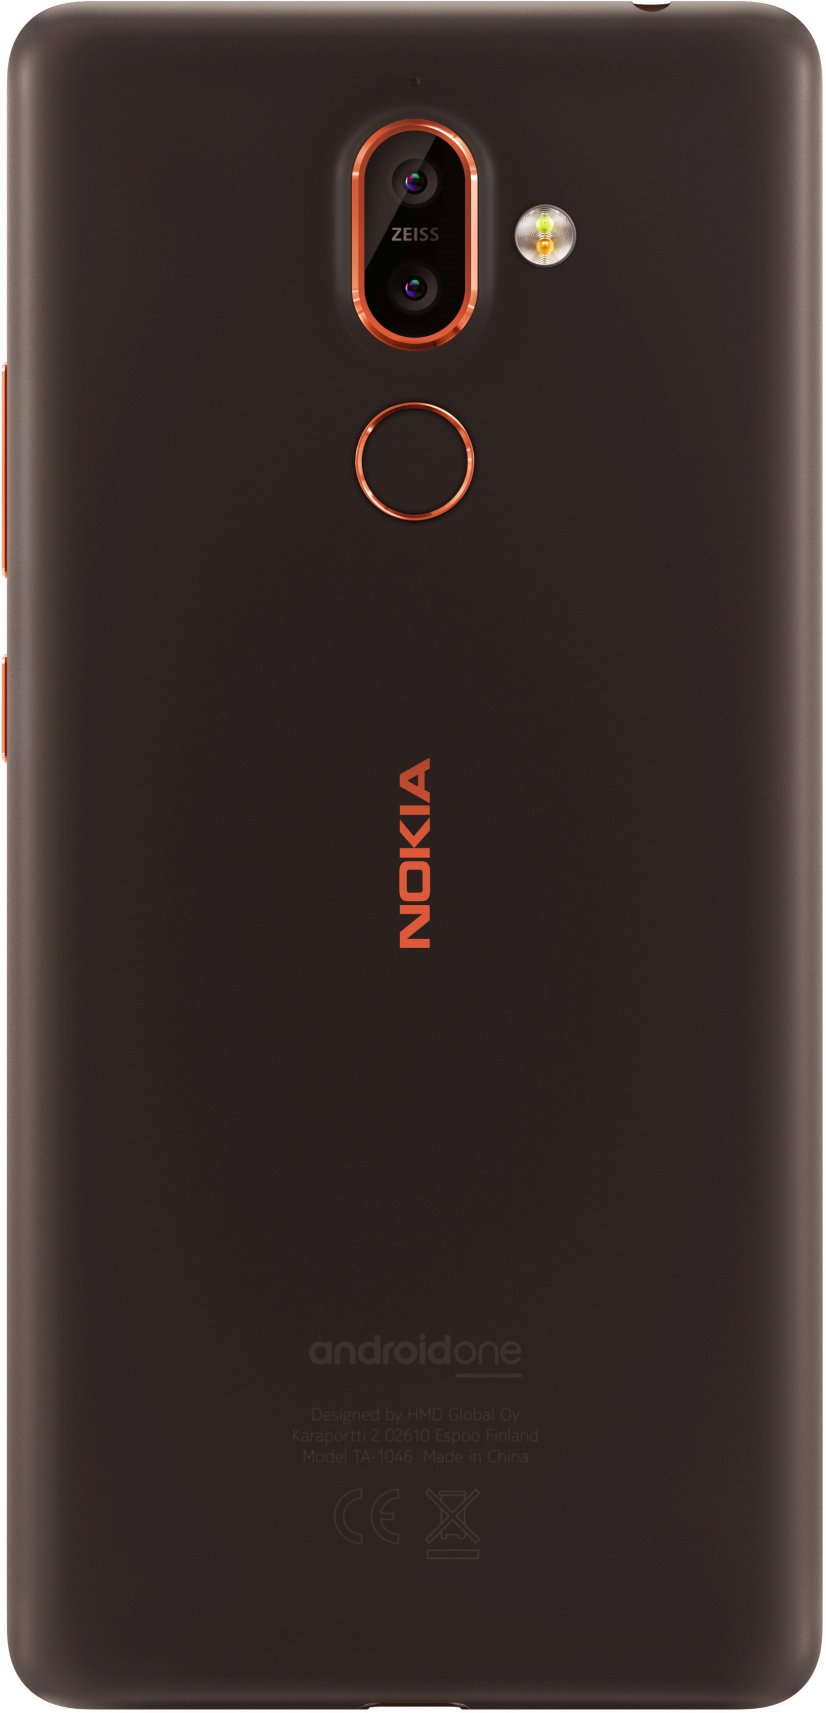 攜同 Nokia 1 一起亮相：Nokia 7 Plus 官方渲染圖與真機一同曝光；配置全面屏 + ZEISS 雙攝！ 3